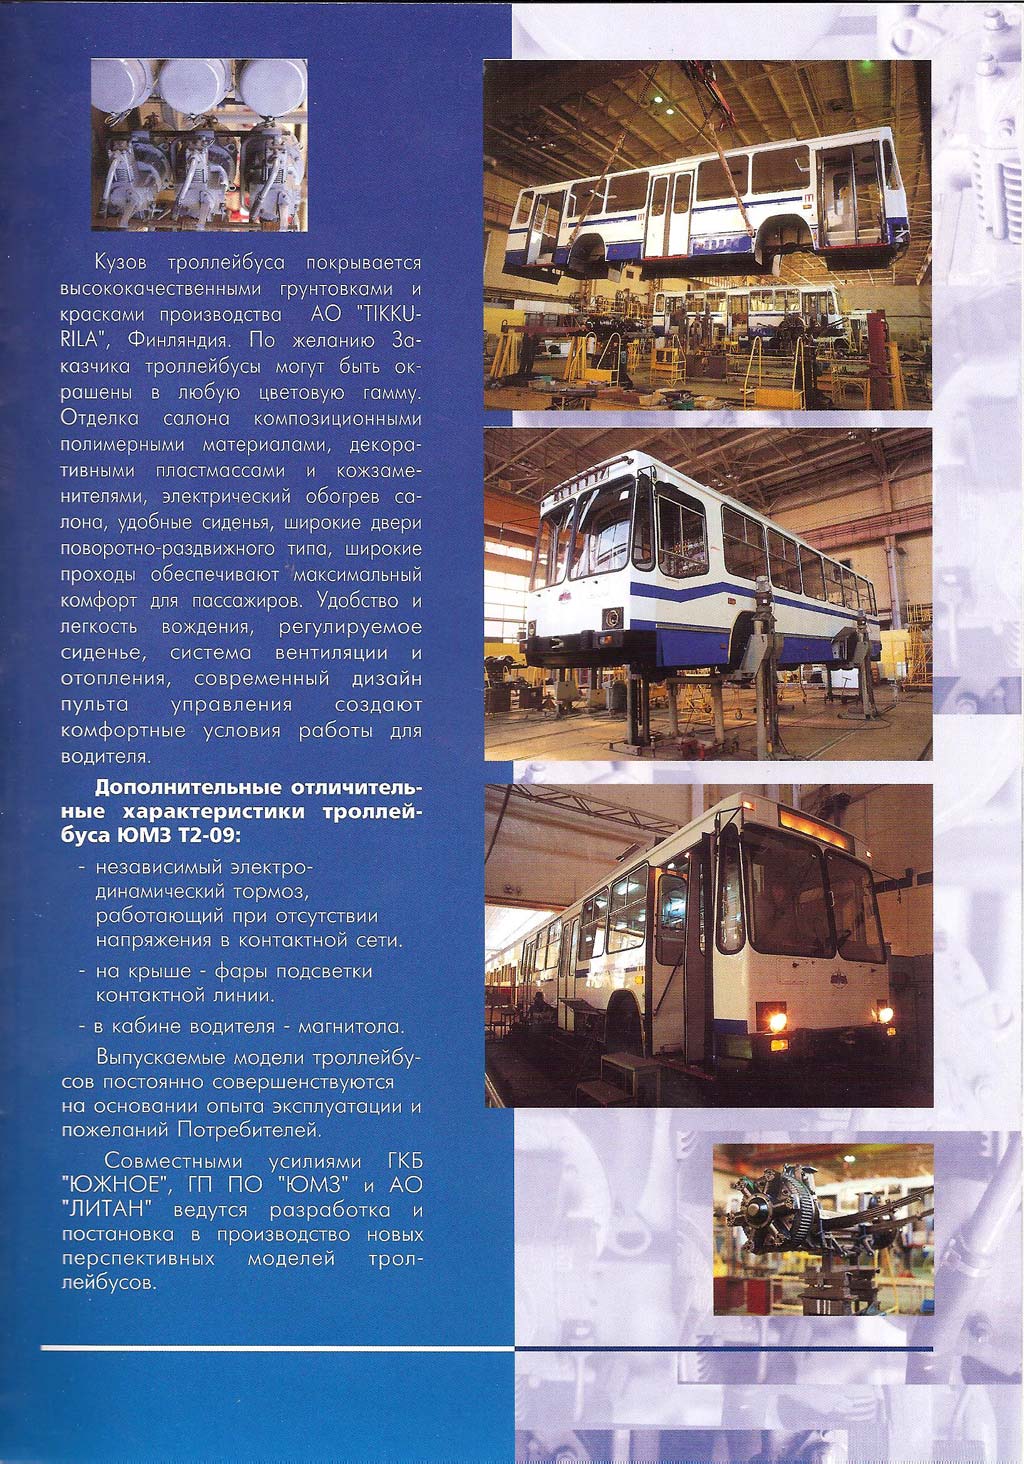 Рекламный каталог «Троллейбусы ЮМЗ»